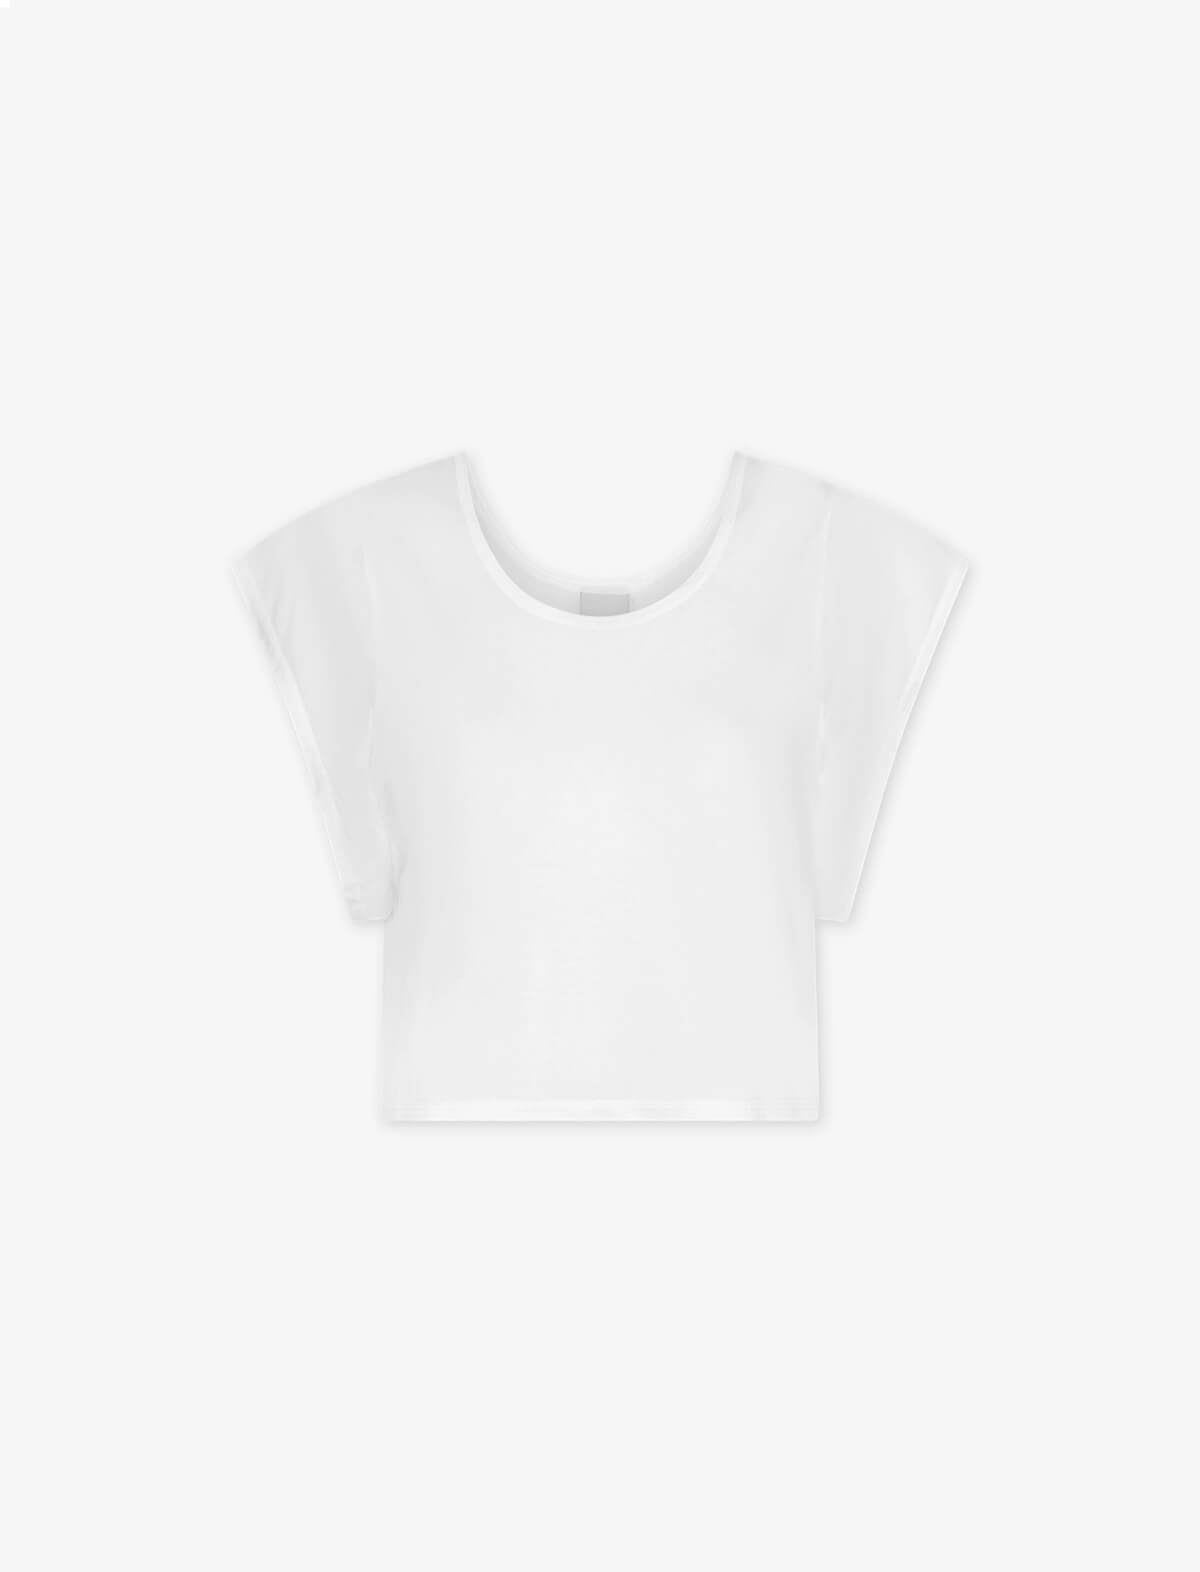 VARLEY Landon Crop T-Shirt in White